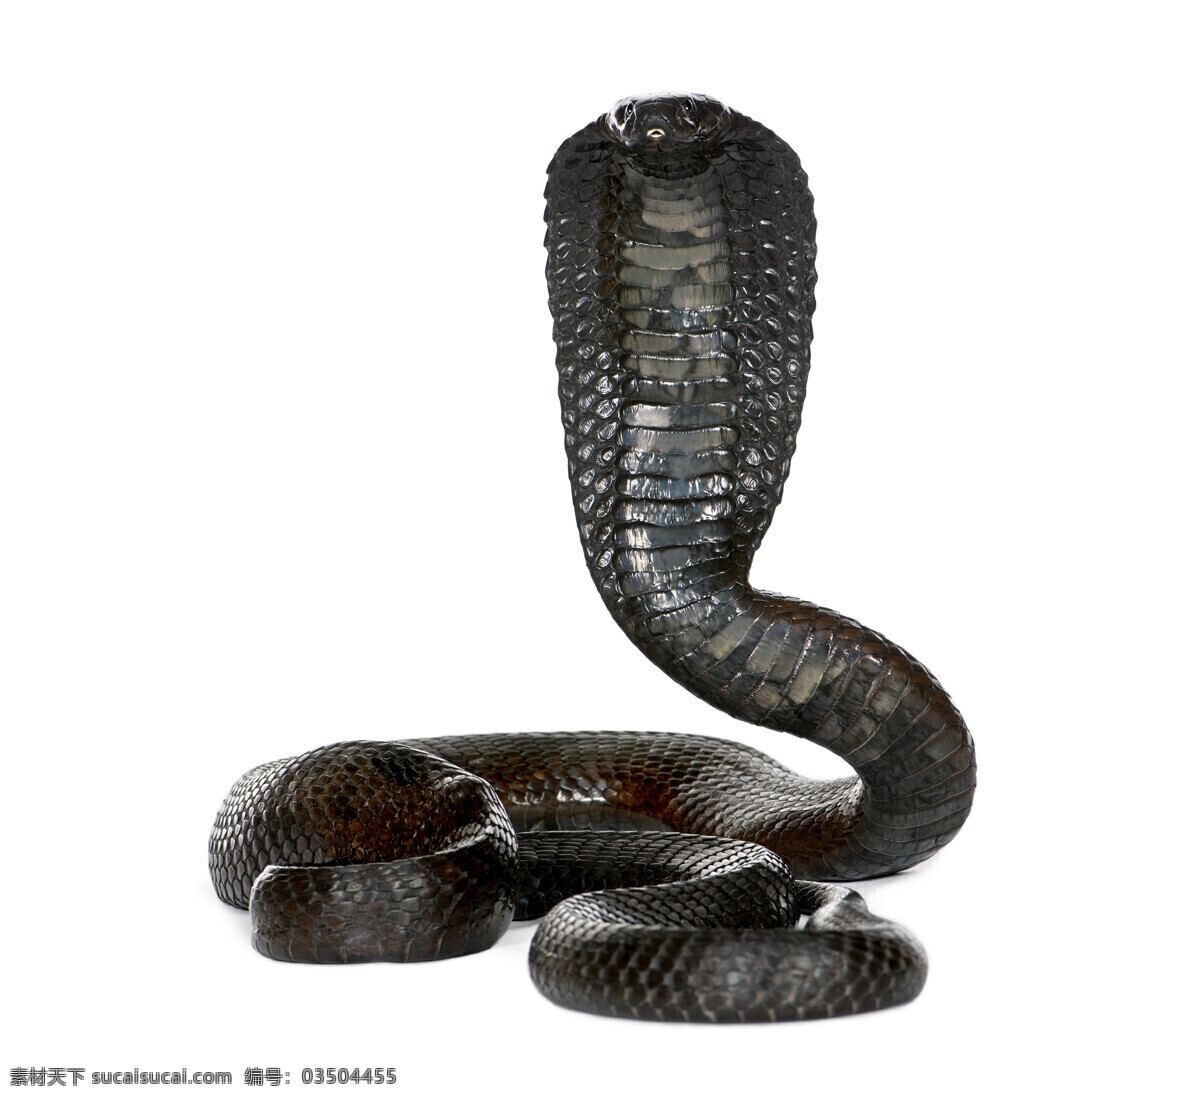 眼镜蛇 毒蛇 动物世界 野生动物 陆地动物 生物世界